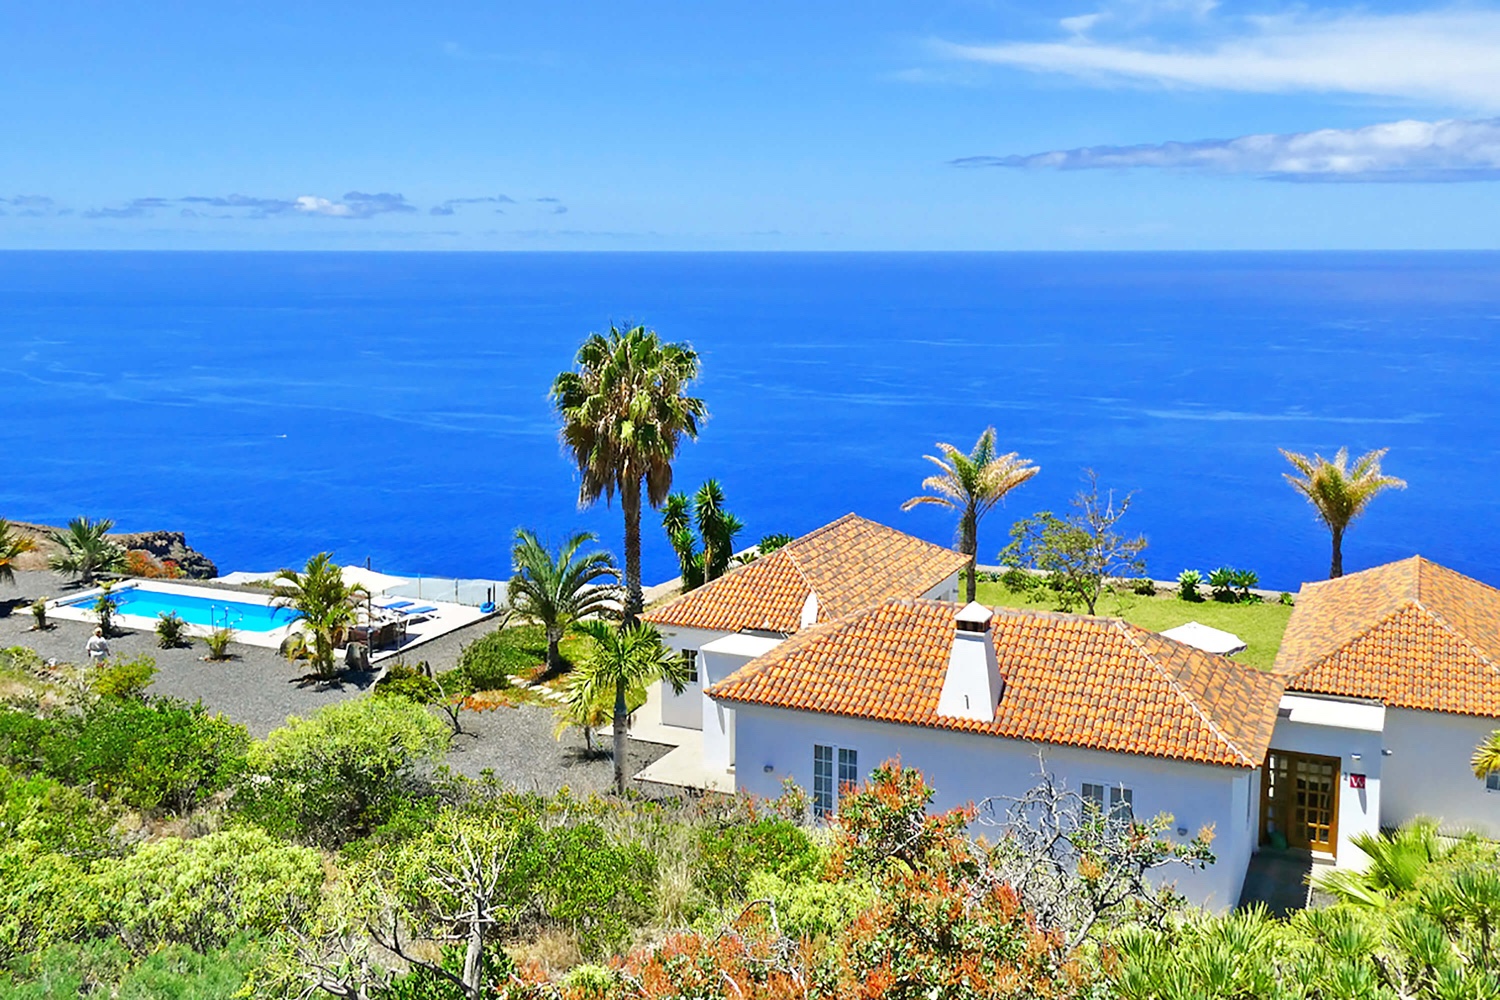 Casa moderna molto bella con piscina privata e splendida vista panoramica sull'Oceano Atlantico. La casa vacanze molto ben attrezzata è l'ideale per una vacanza alla Palma con tutti i comfort.